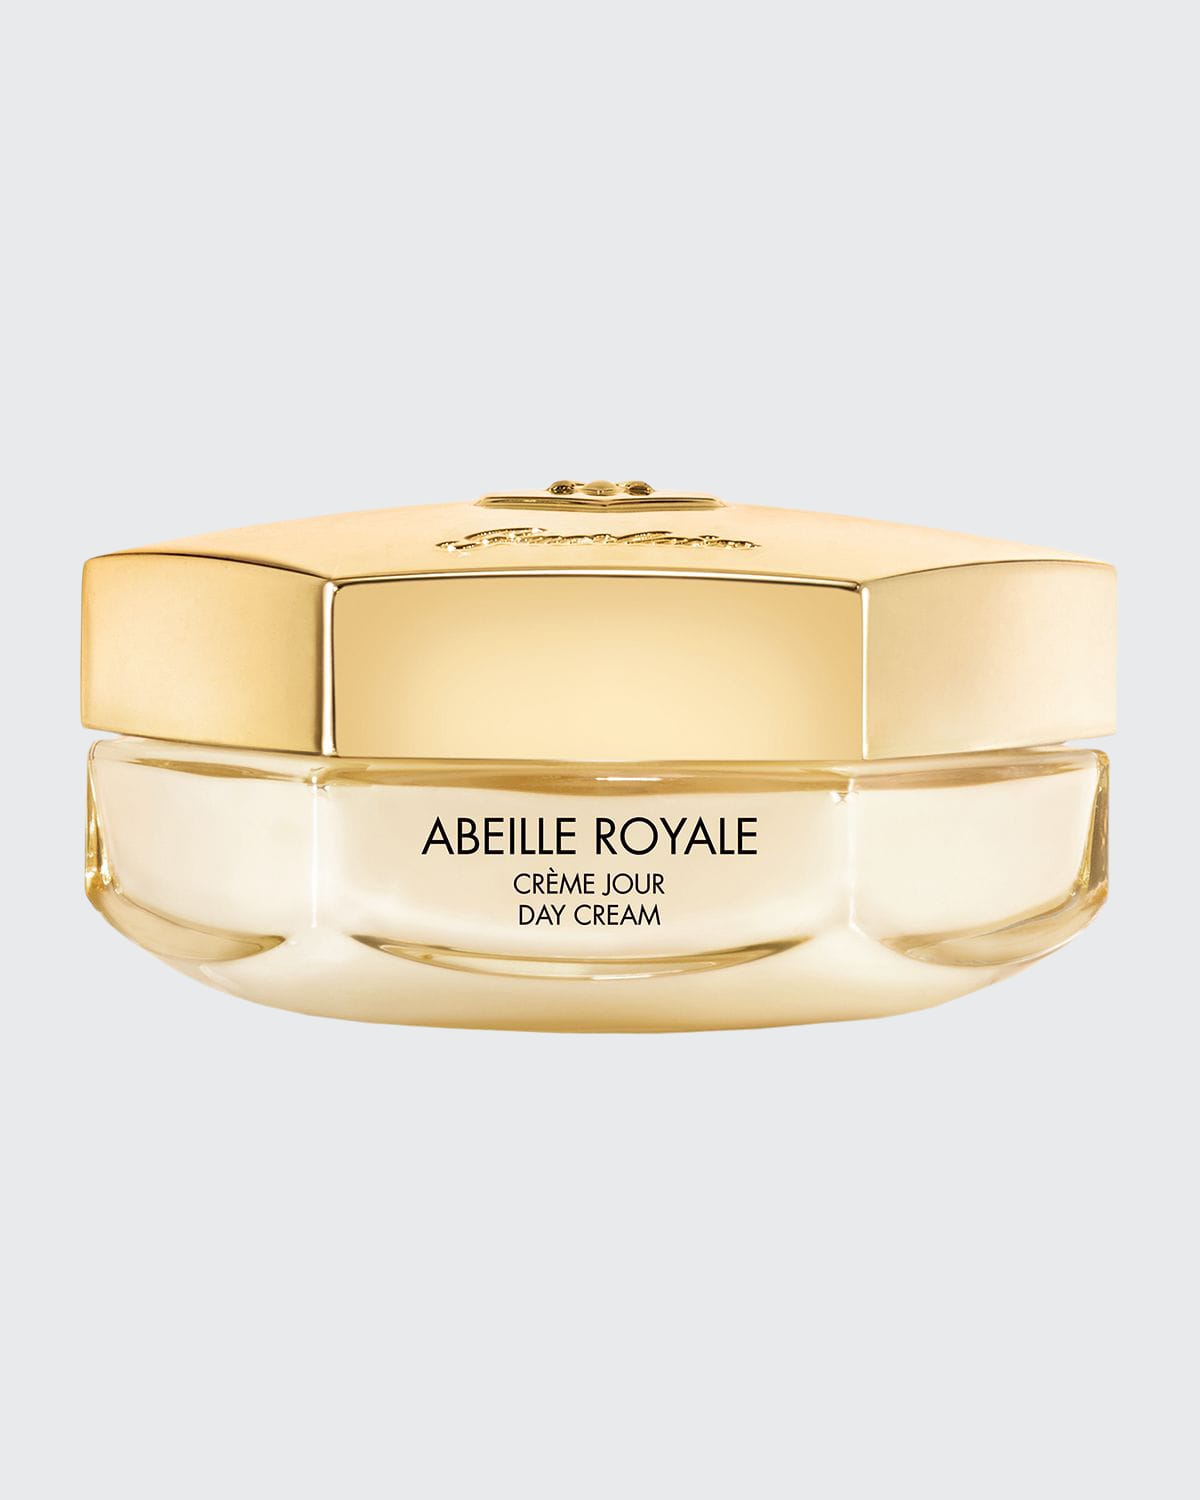 Abeille Royale Anti-Aging Day Cream, 1.7 oz.